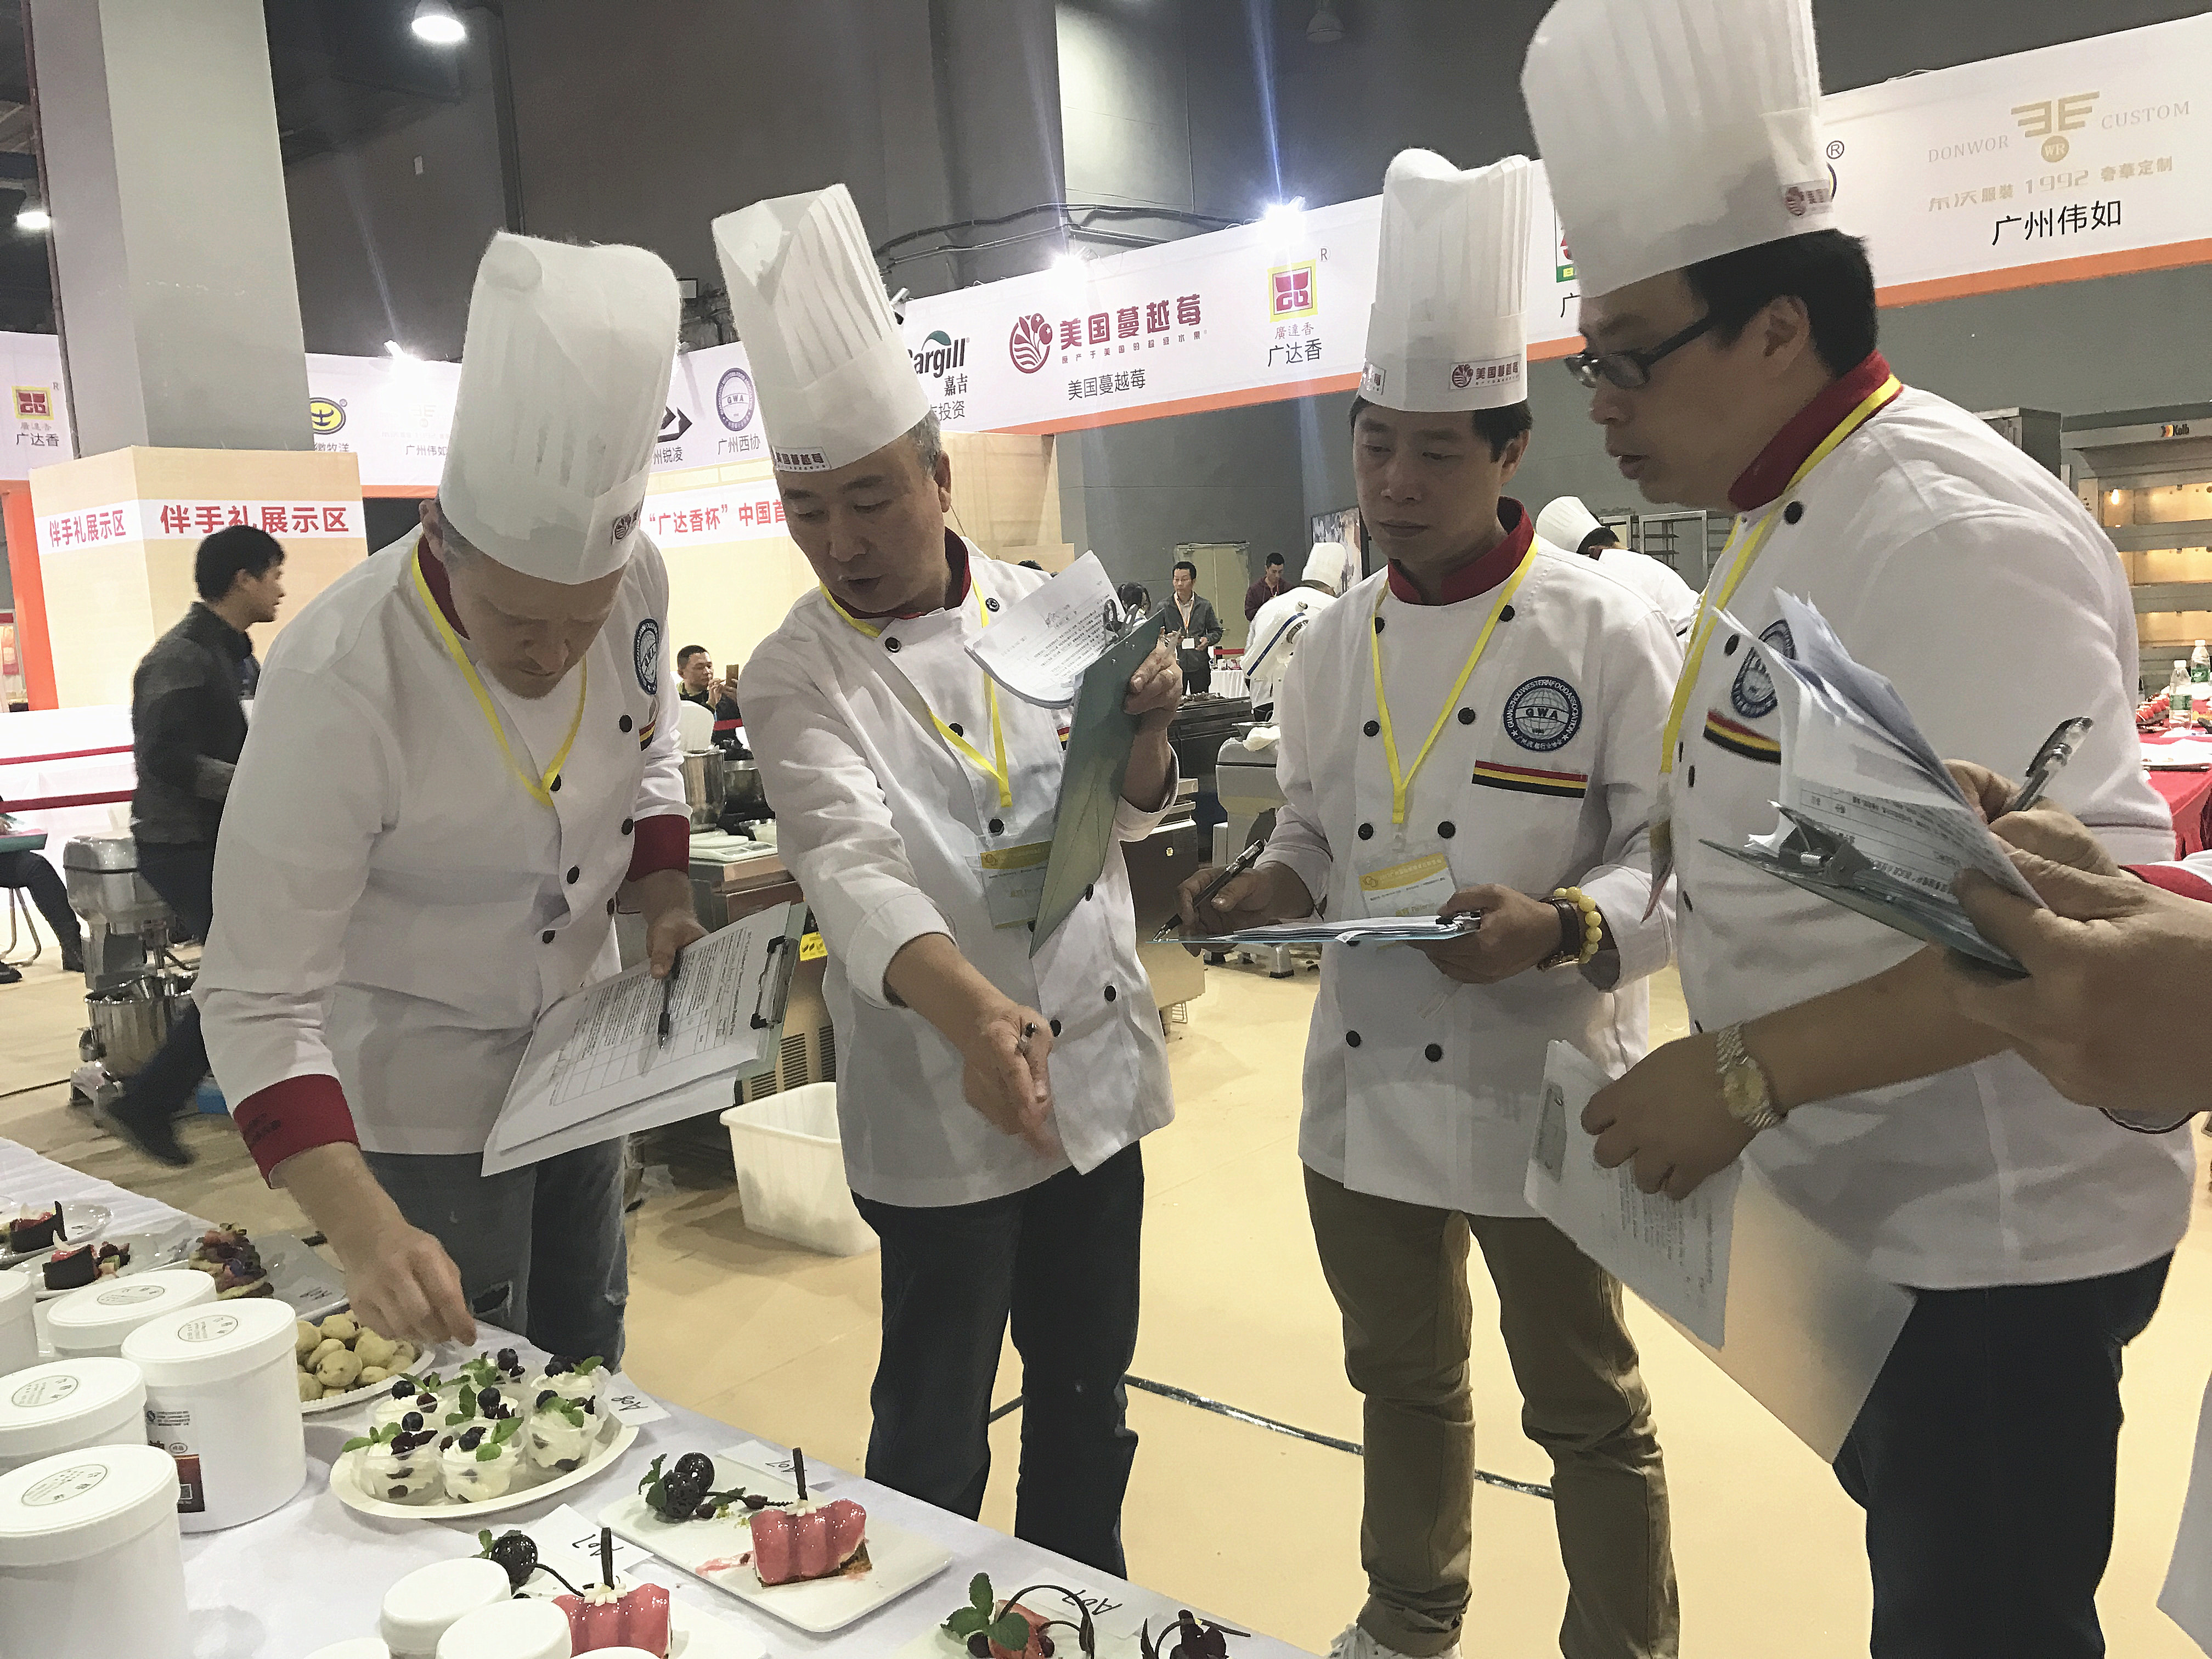 成都首次举办中式面点师技能比赛 100余名厨师同台比拼炸、蒸、捏等中式面点烹饪技艺成都市总工会